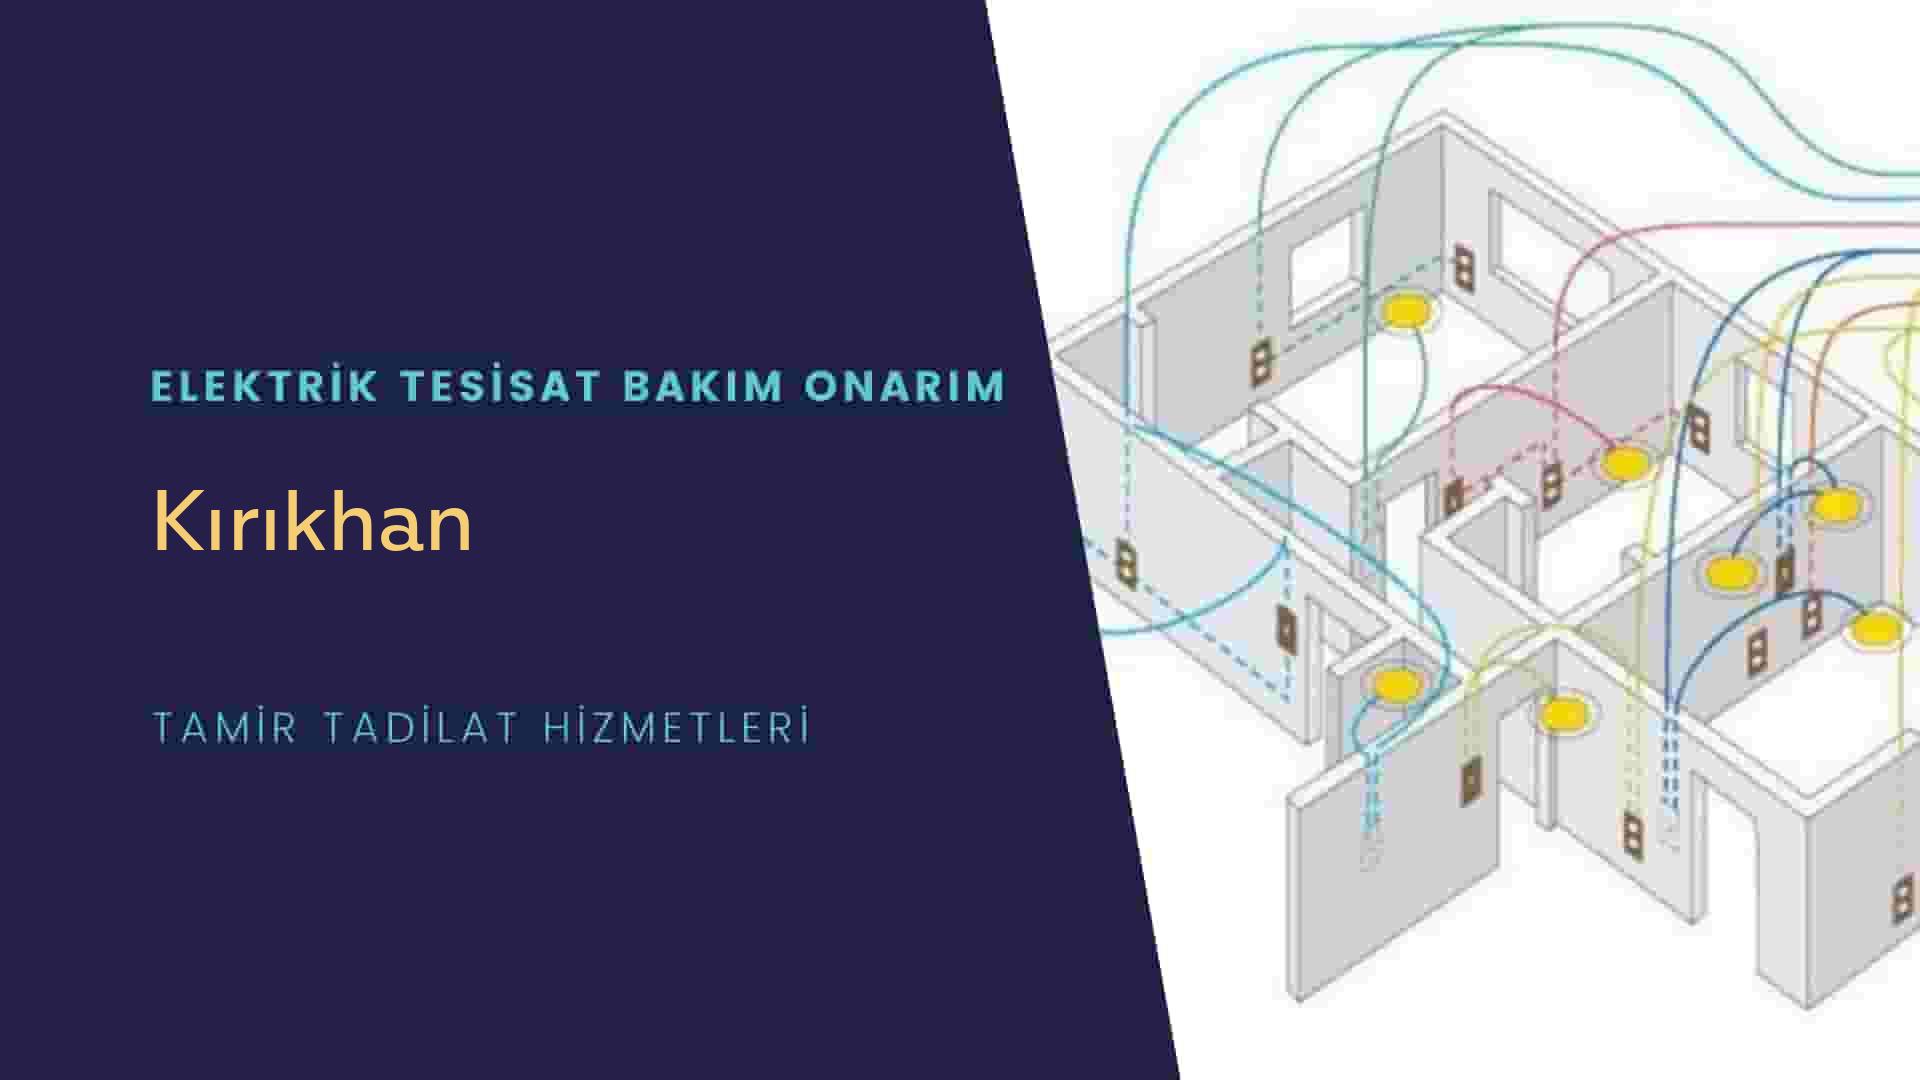 Kırıkhan'da elektrik tesisatı ustalarımı arıyorsunuz doğru adrestenizi Kırıkhan elektrik tesisatı ustalarımız 7/24 sizlere hizmet vermekten mutluluk duyar.